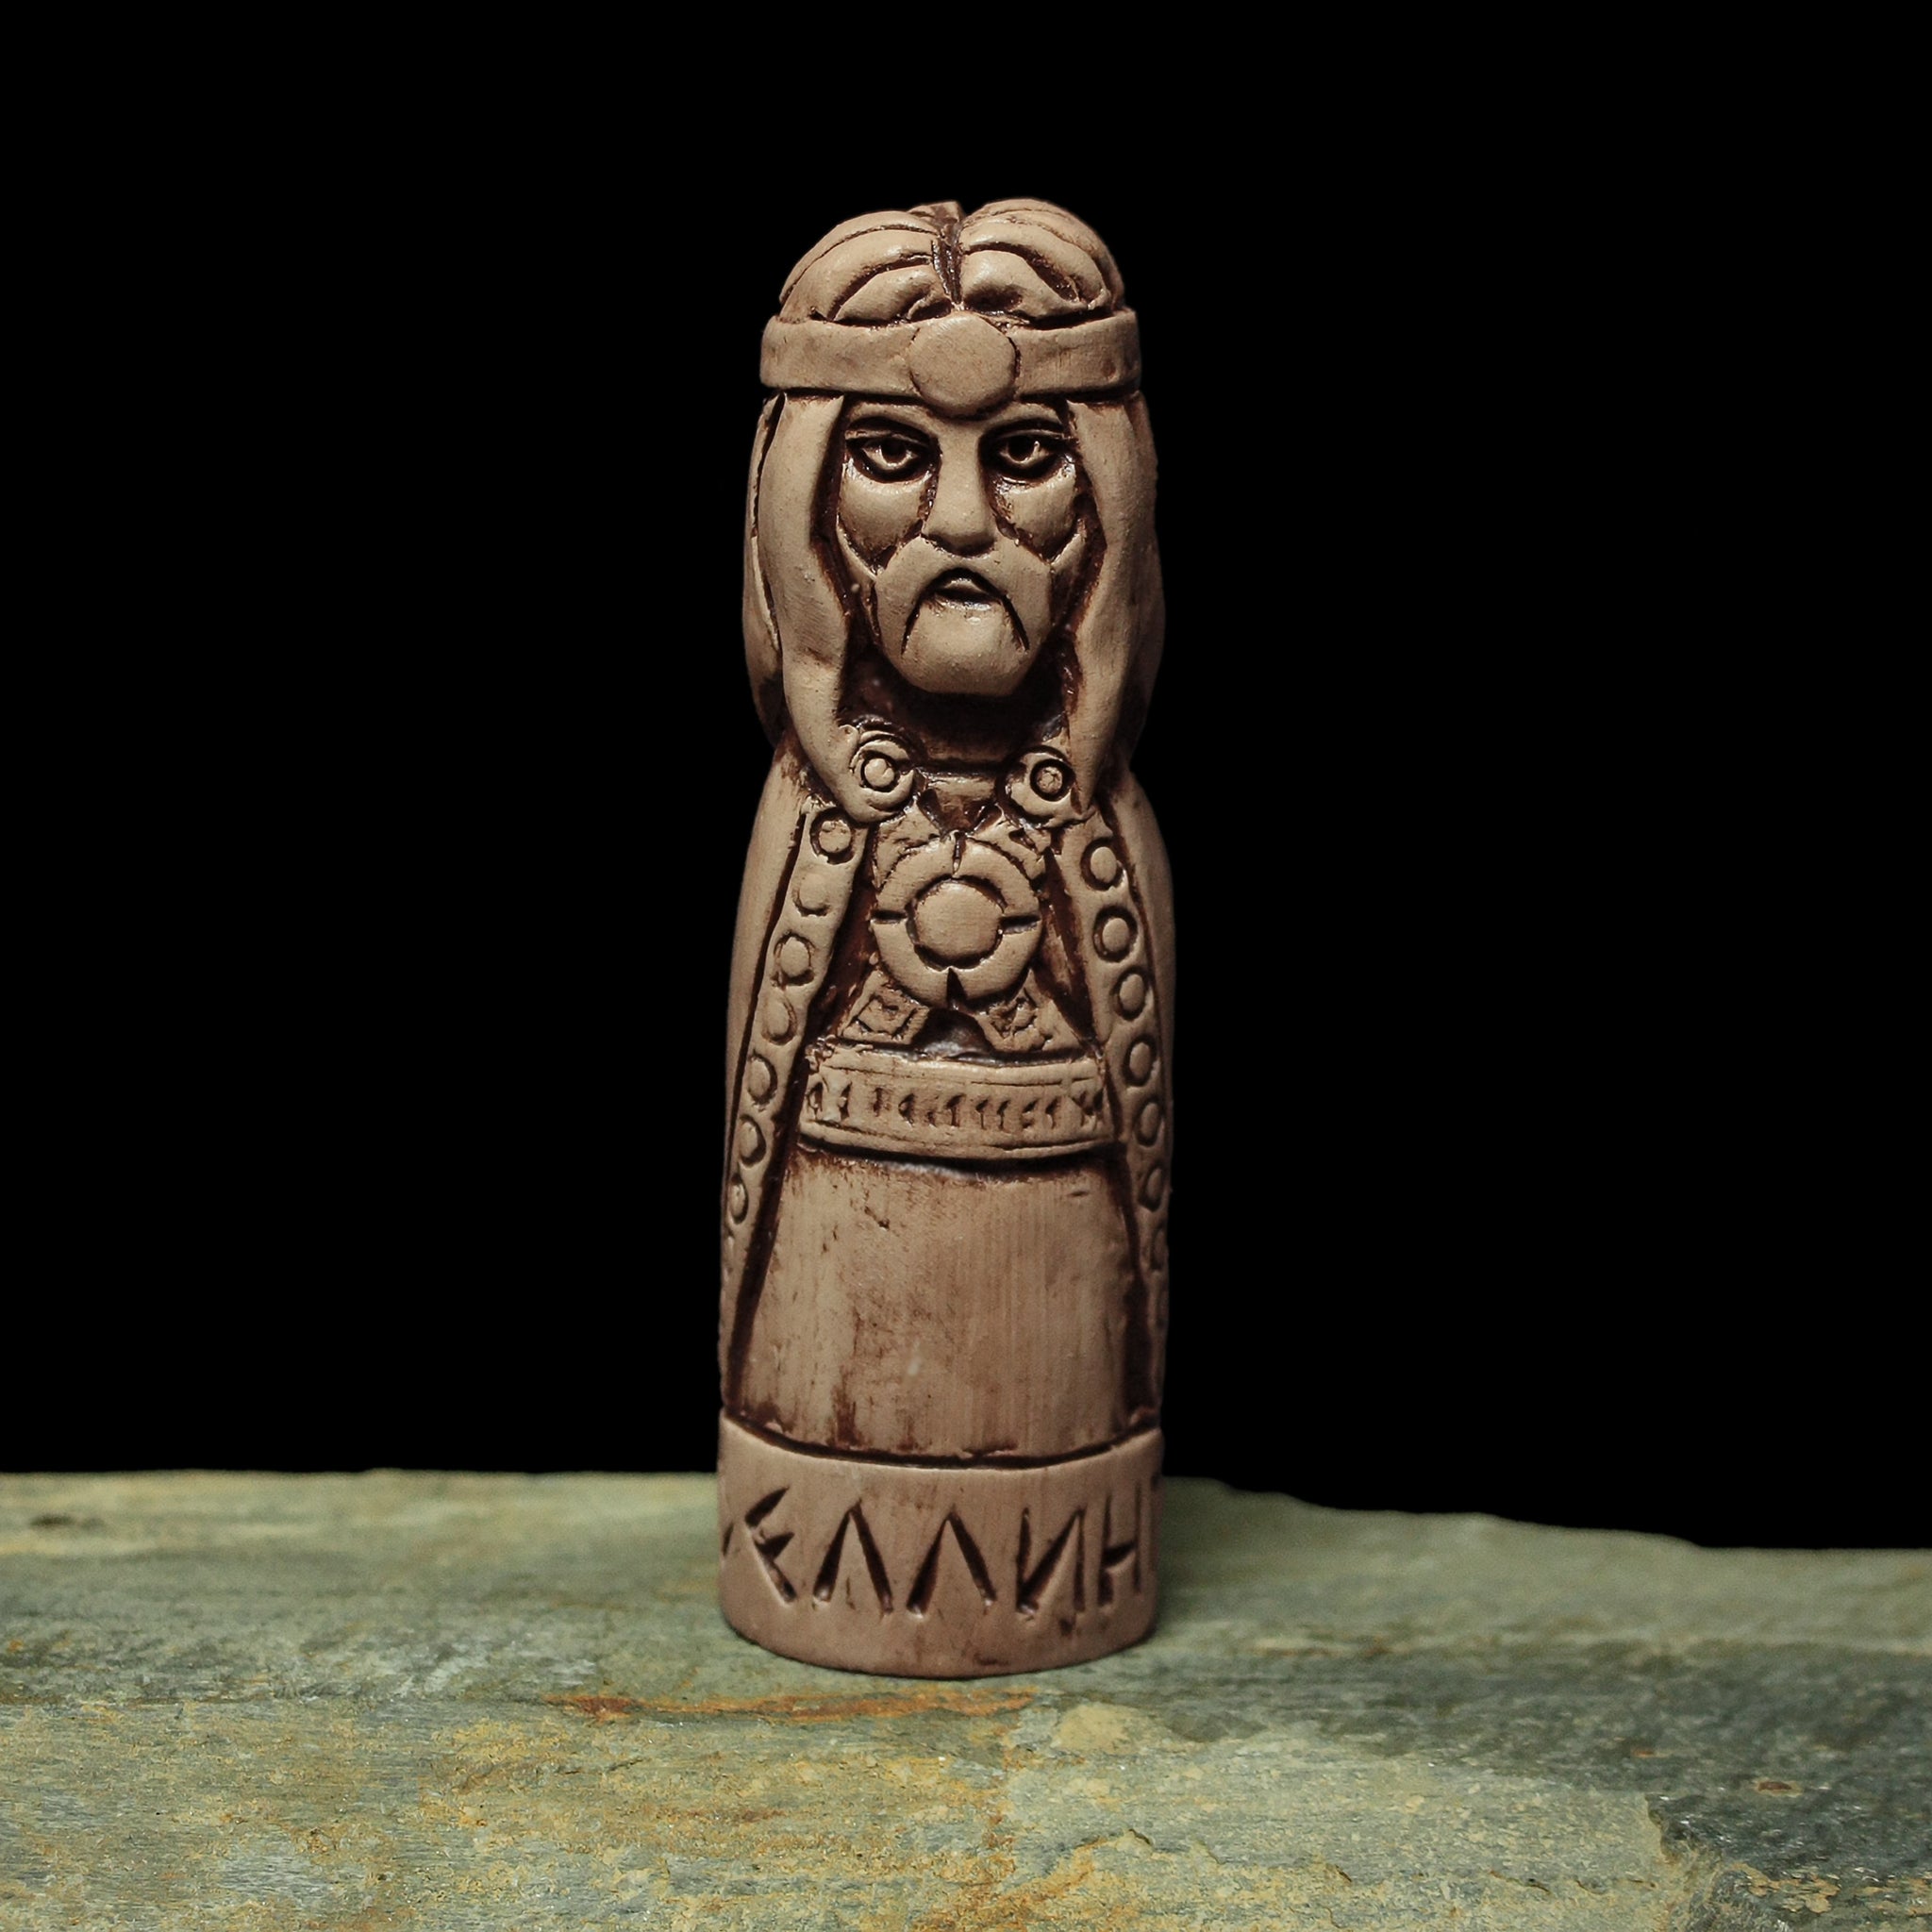 Hand-Crafted Ceramic Dellingr Statuette - Norse Gods